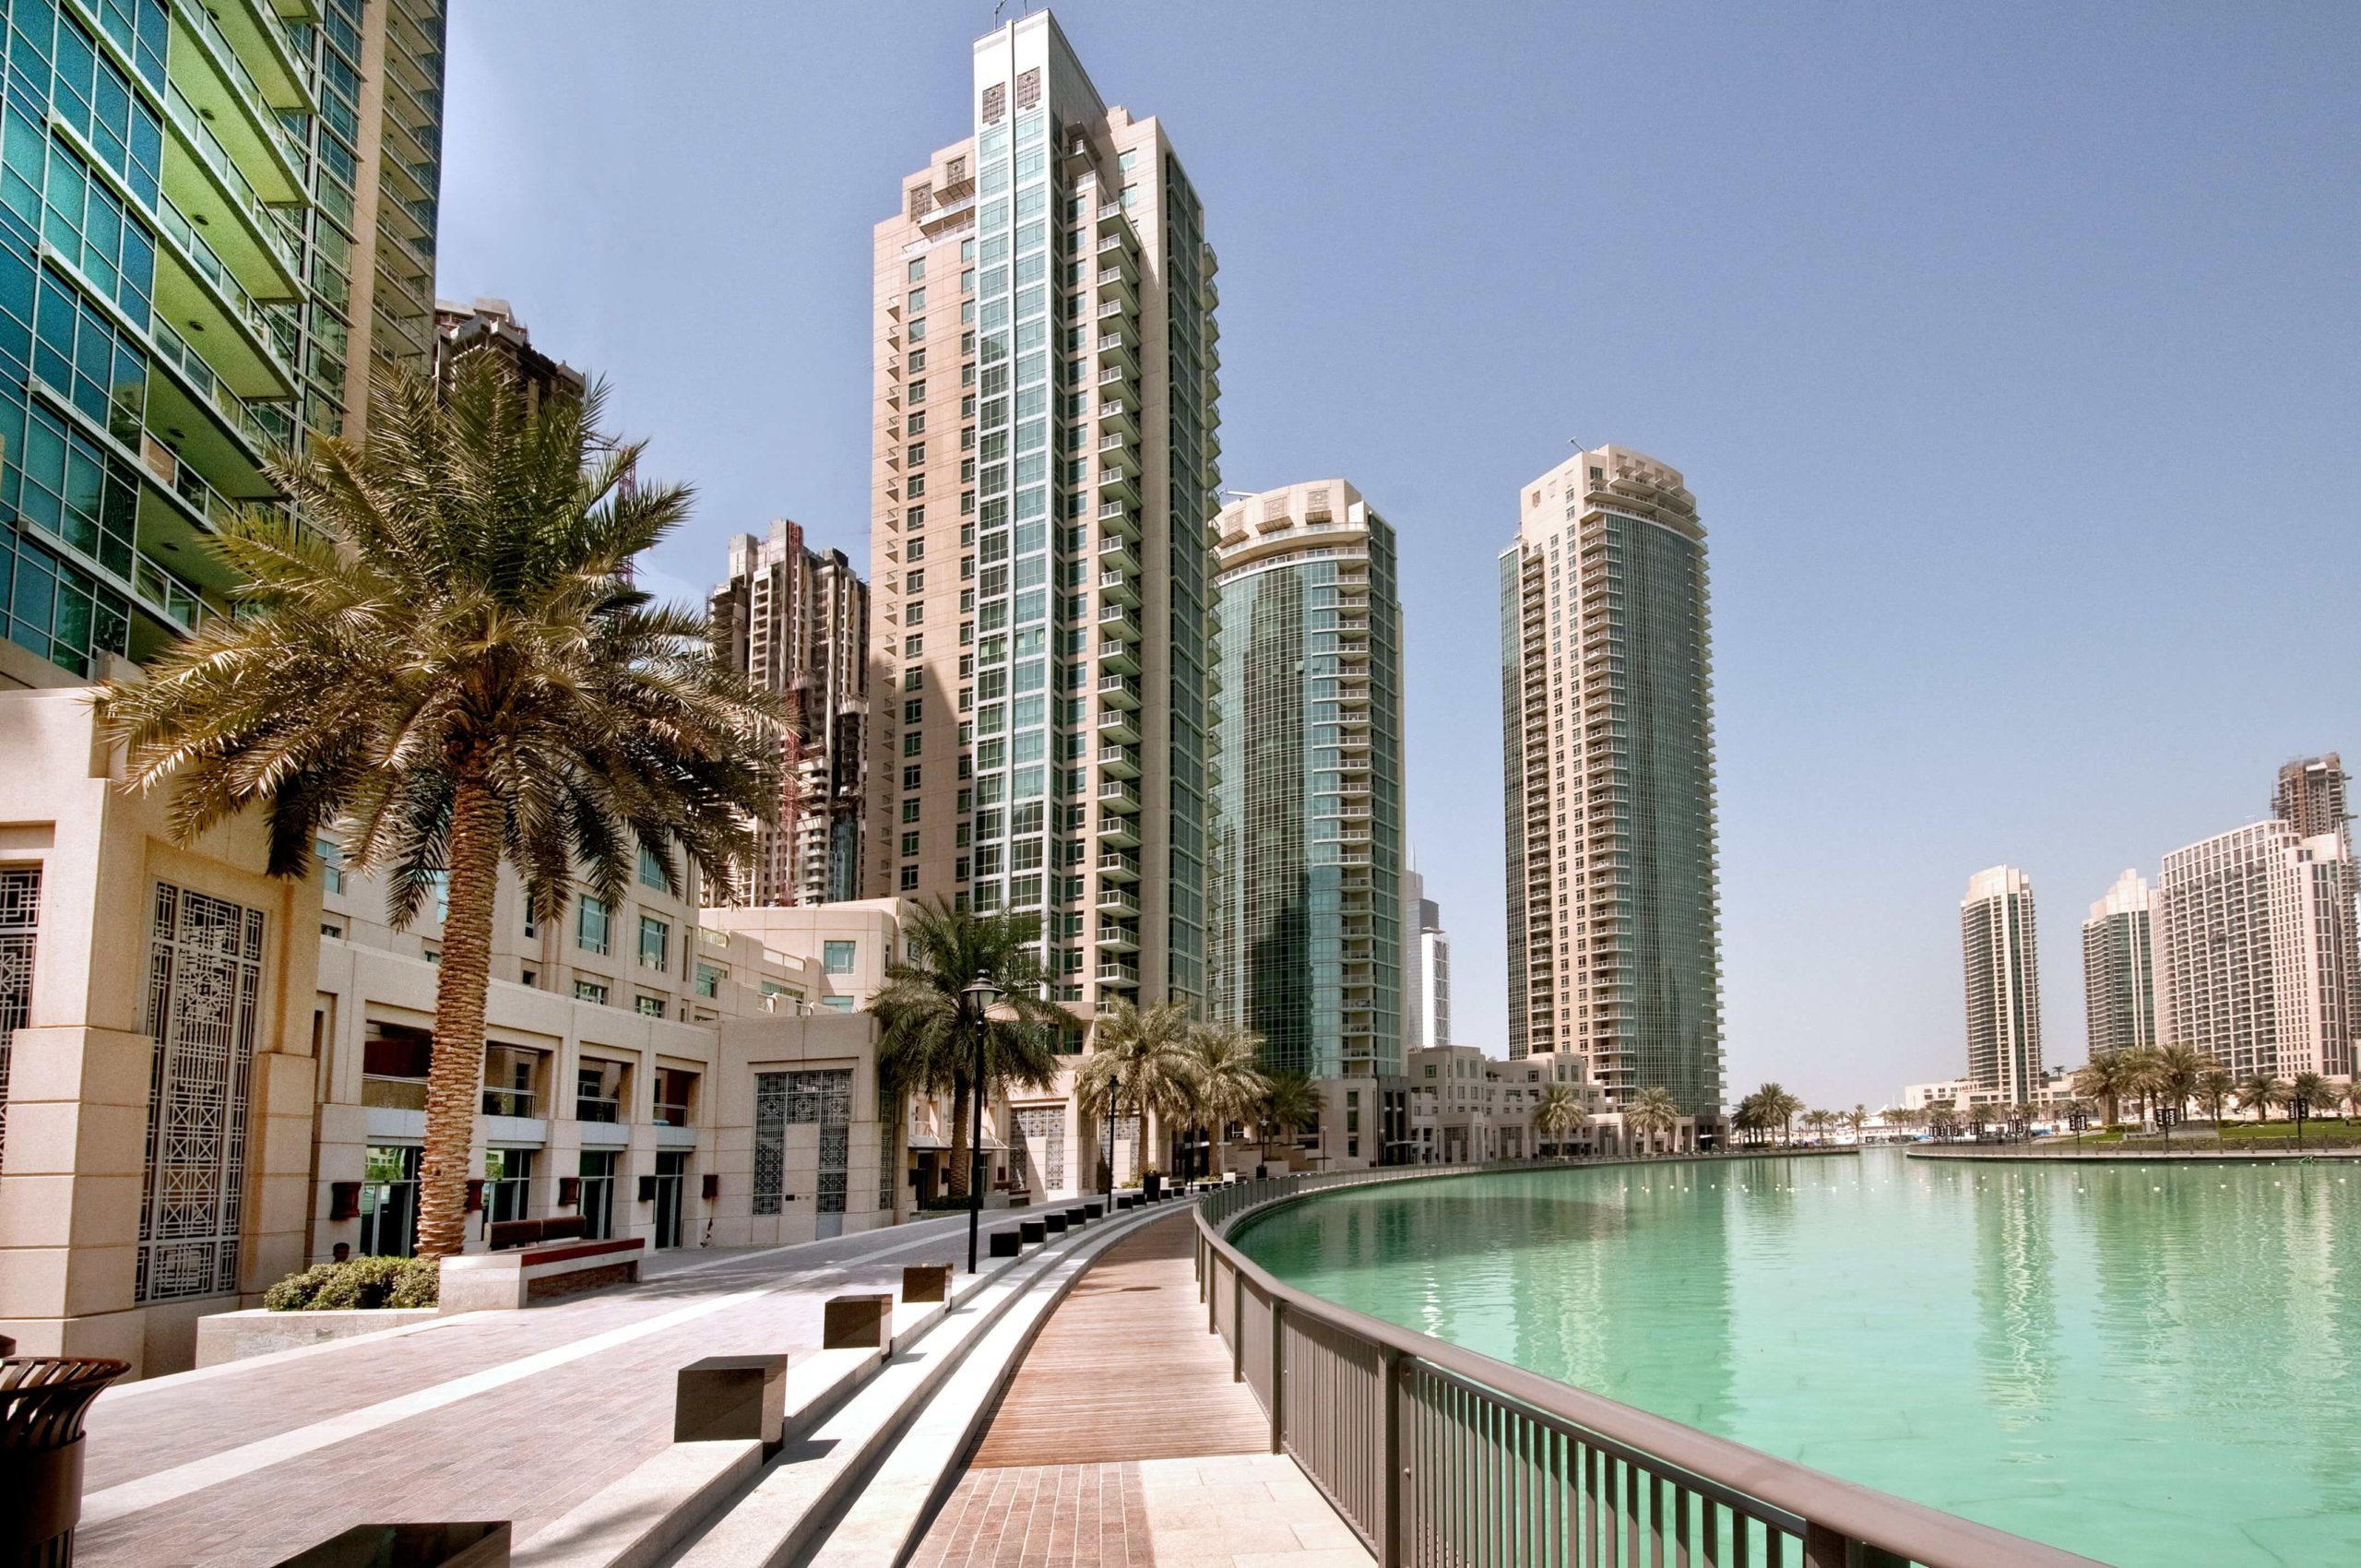 Застройка будущего: покупка недвижимости в Арабских Эмиратах и Дубае